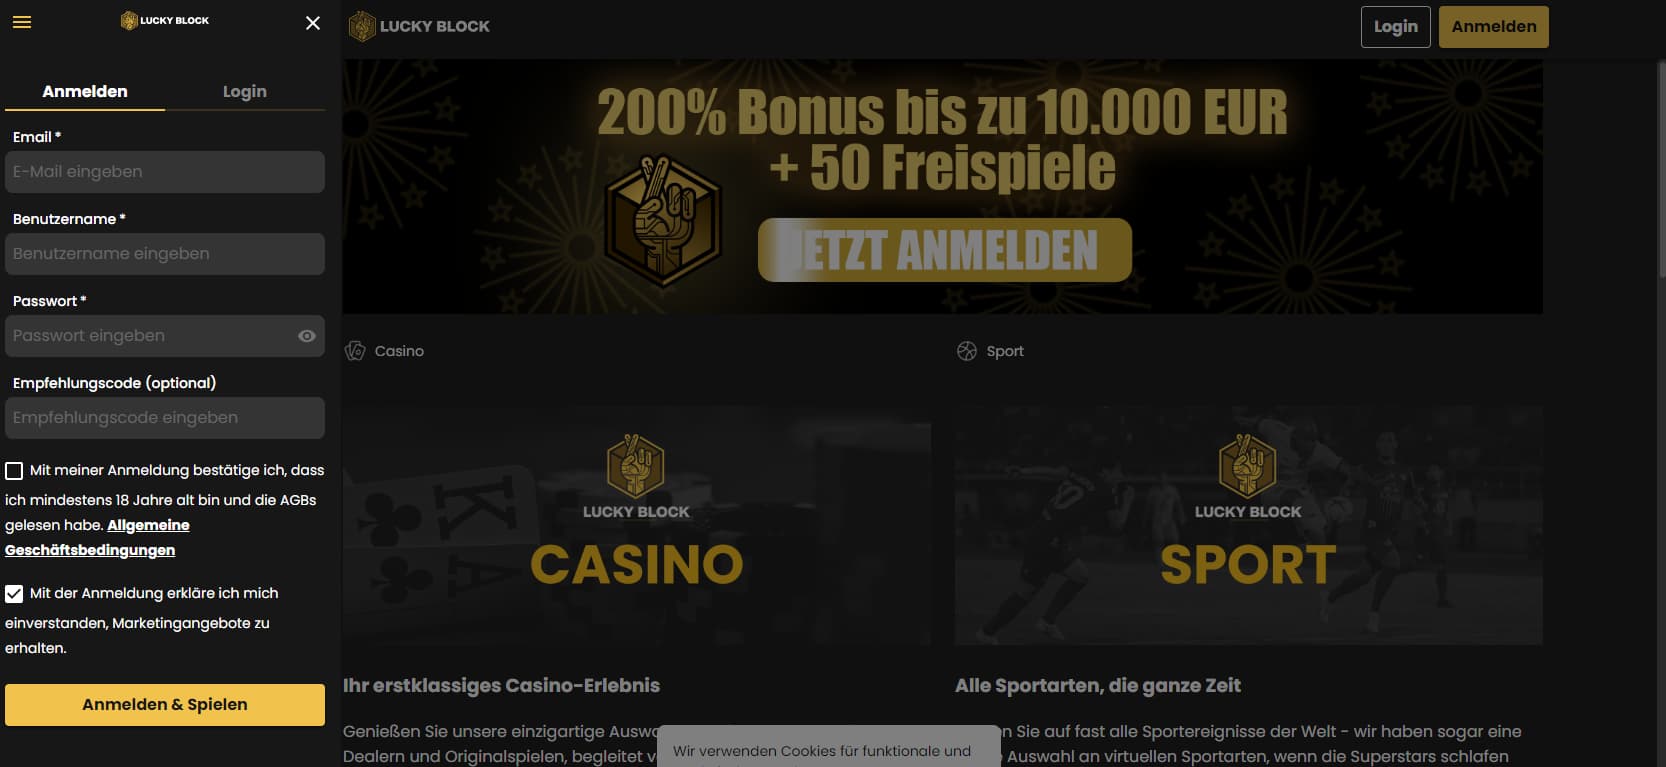 Wie Sie Ihr Casinos Online wie eine Million Dollar aussehen lassen